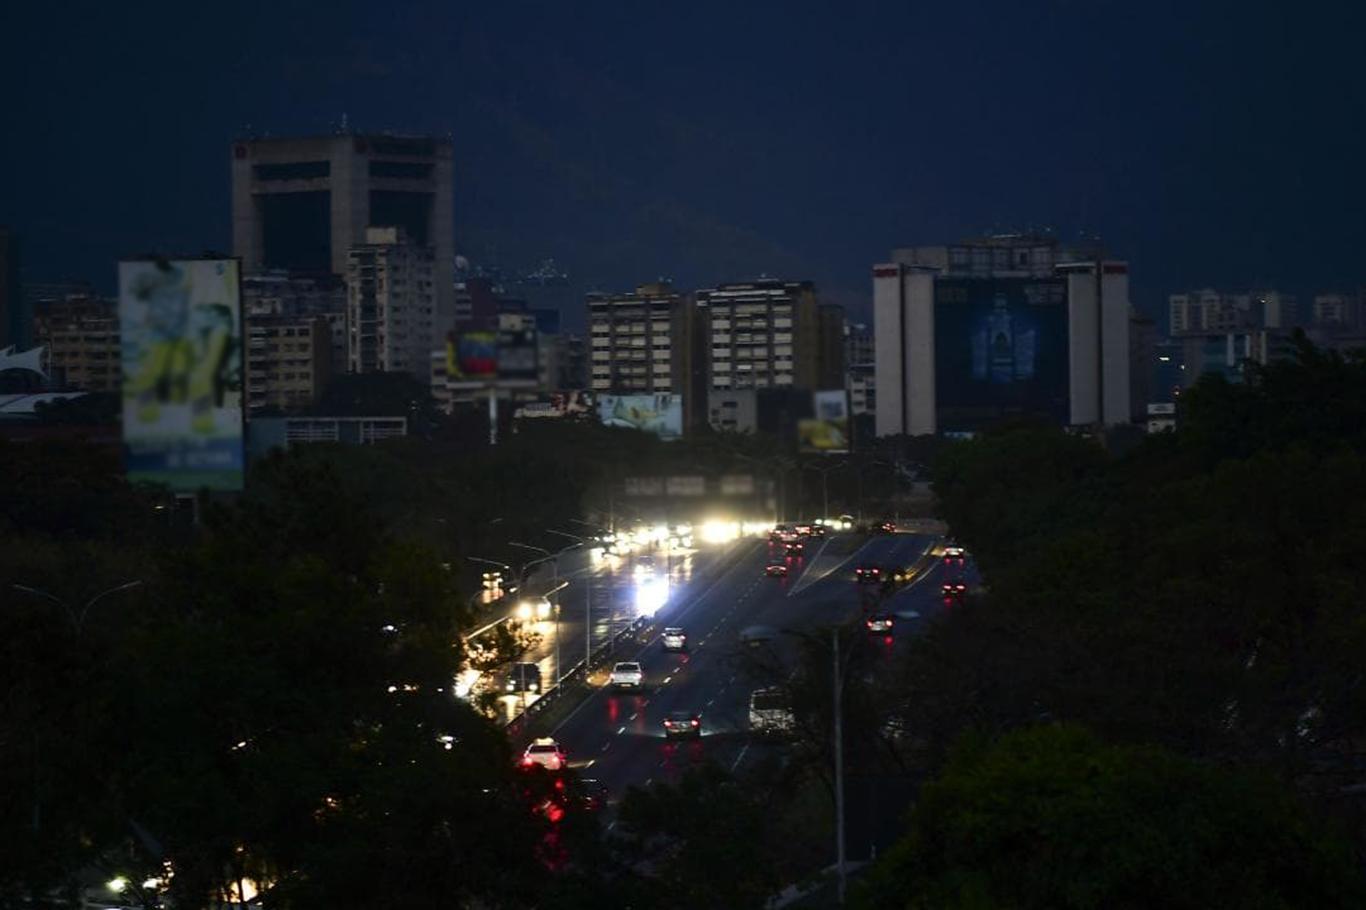 Venezuela'da "sabotaj" olarak iddia edilen elektrik kesintisi giderilemiyor